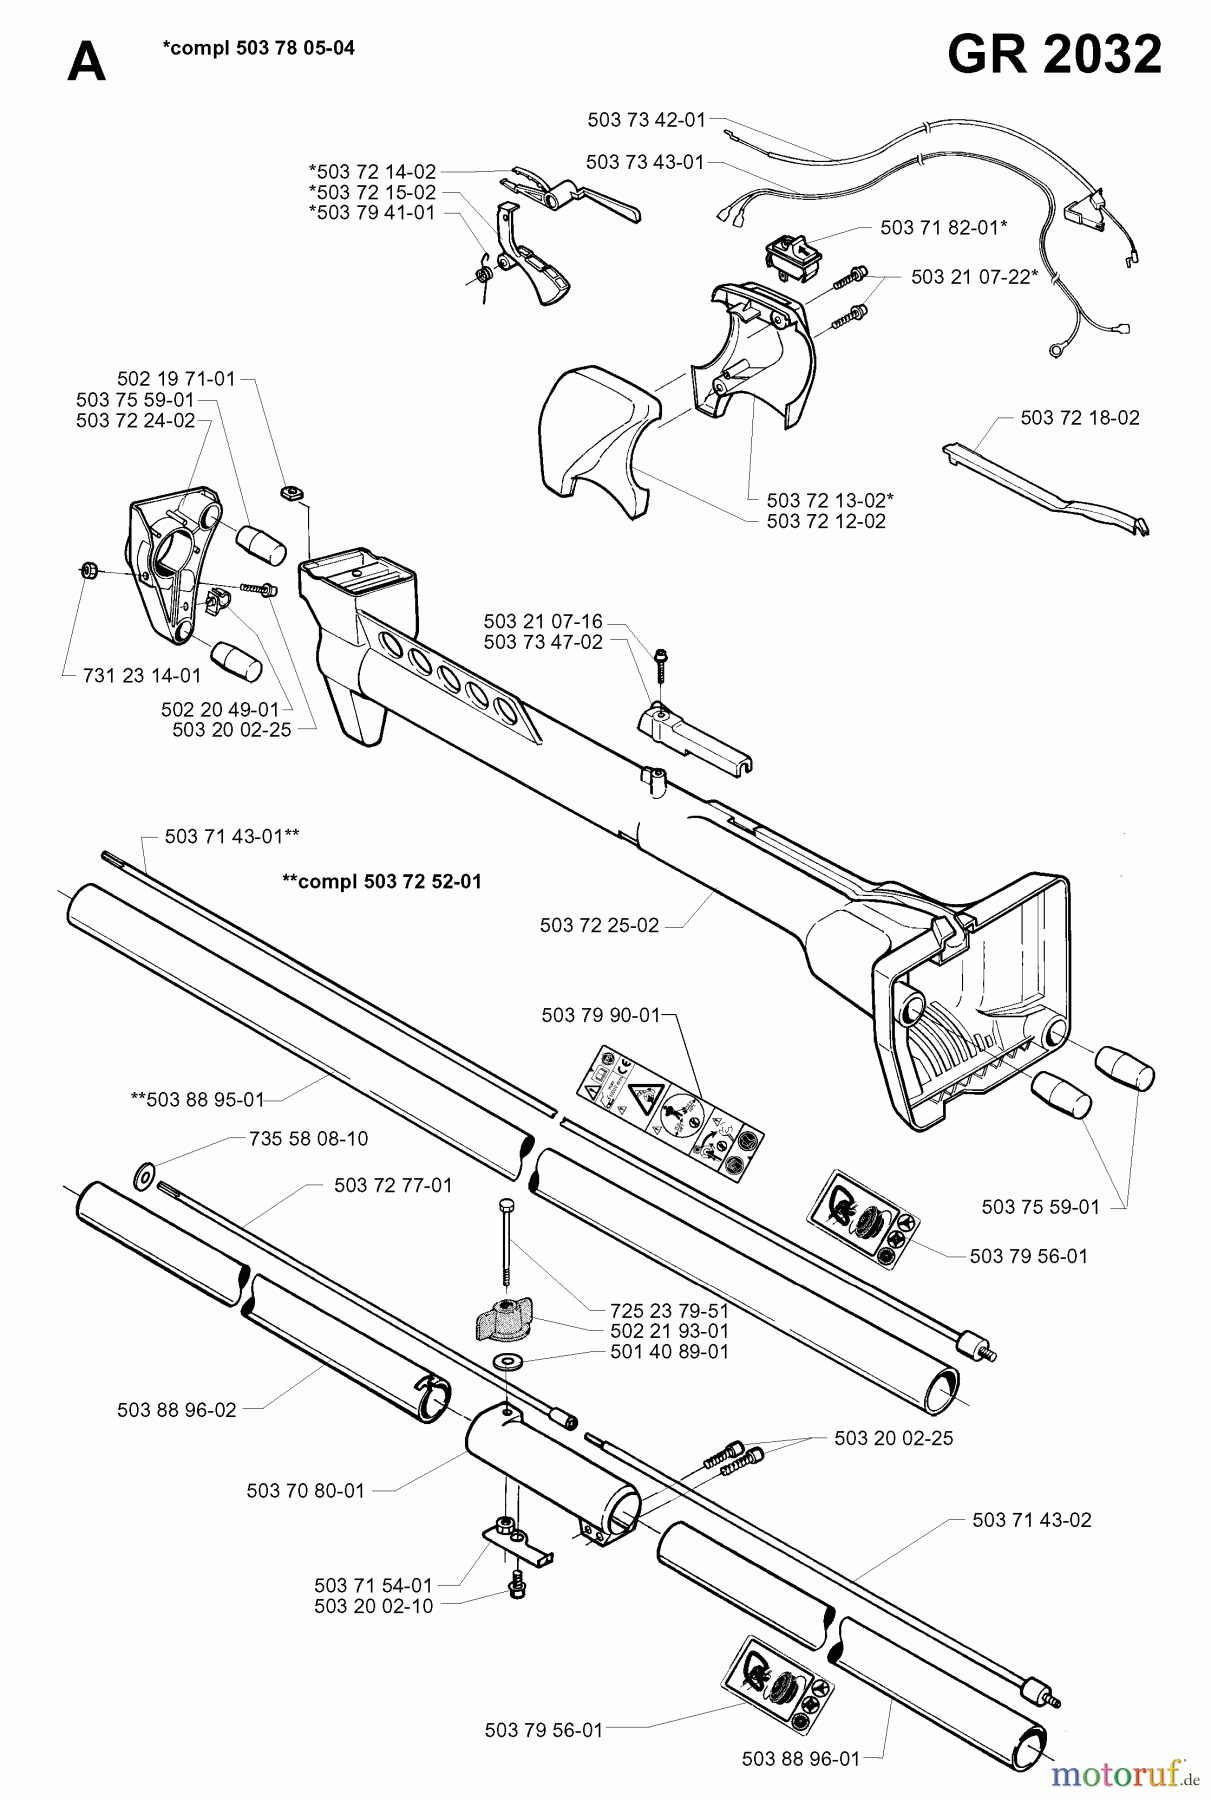  Jonsered Motorsensen, Trimmer GR2032 - Jonsered String/Brush Trimmer (1998-02) SHAFT HANDLE